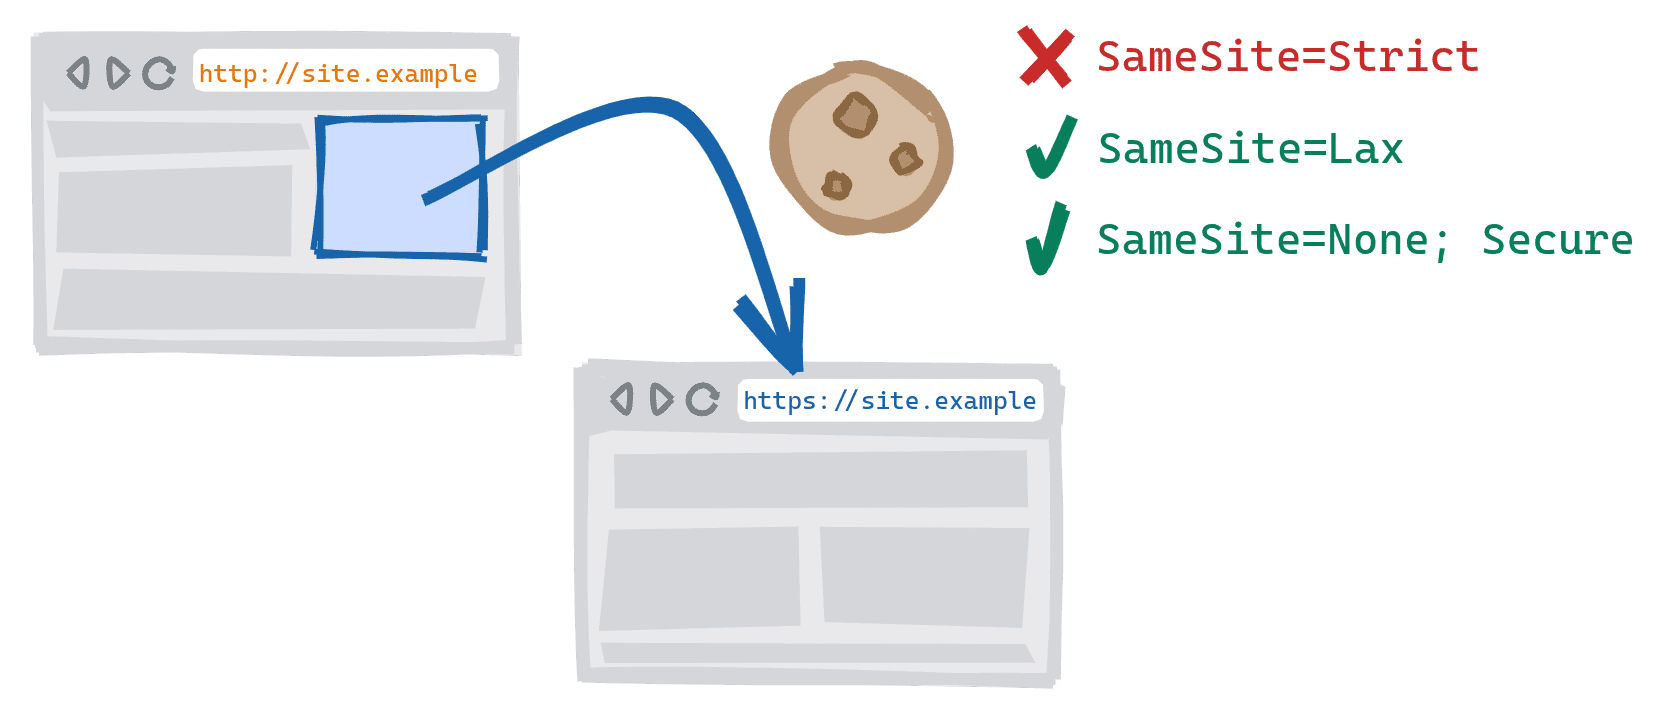 經由網站不安全 HTTP 版本上的連結前往安全 HTTPS 版本時，即觸發跨配置瀏覽。SameSite=Strict Cookie 遭到封鎖、SameSite=Lax 和 SameSite=None;已允許安全 Cookie。